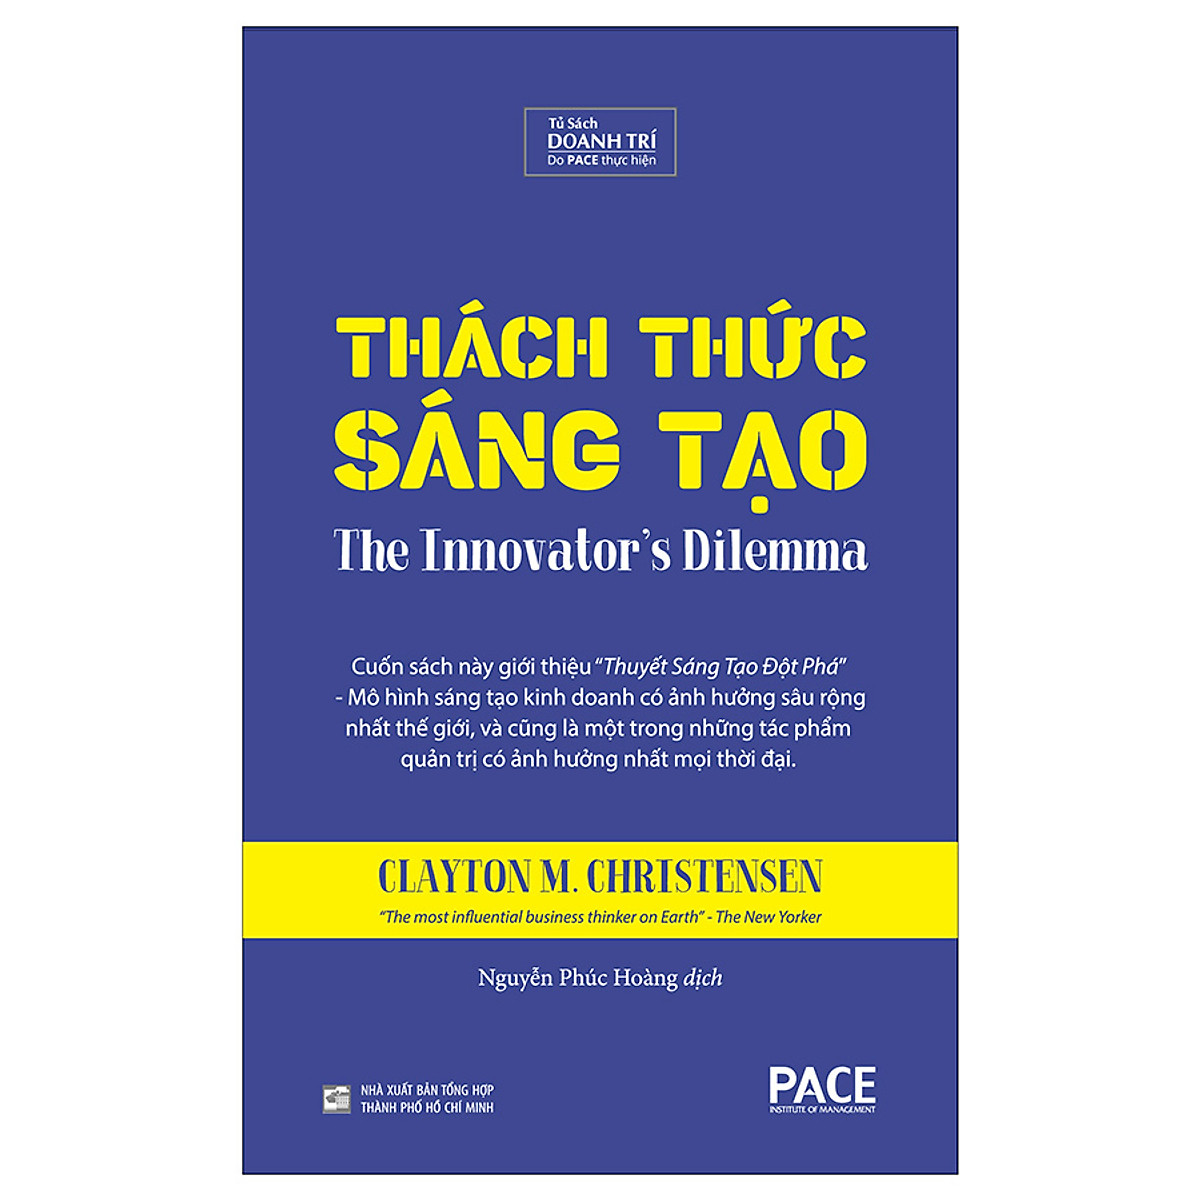 Sách PACE Books - Thách thức sáng tạo (The Innovator's Dilemma) - Clayton M. Christensen